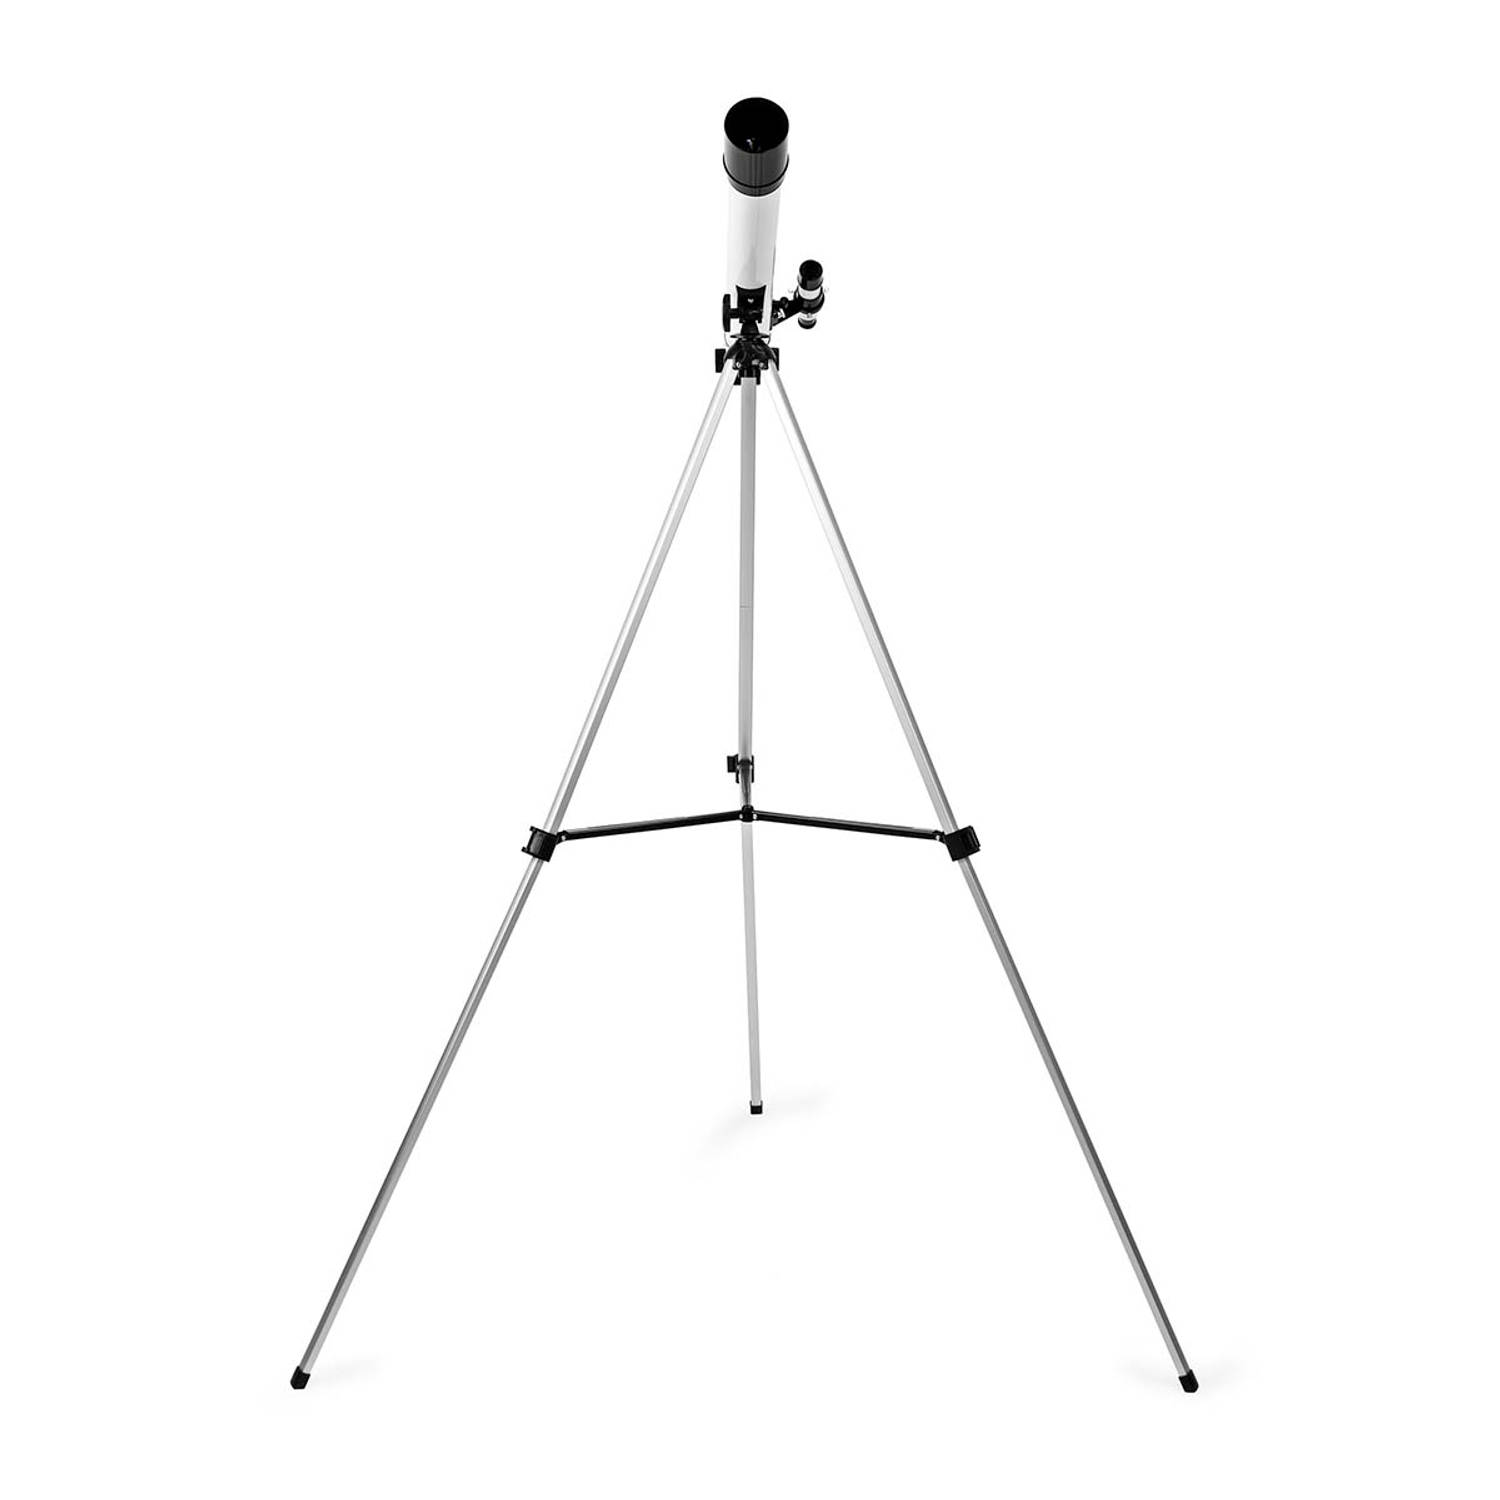 Telescoop | 50 mm | 600 mm | 5 x 24 | Tripod | Wit-Zwart | 1 stuks SCTE5060WT